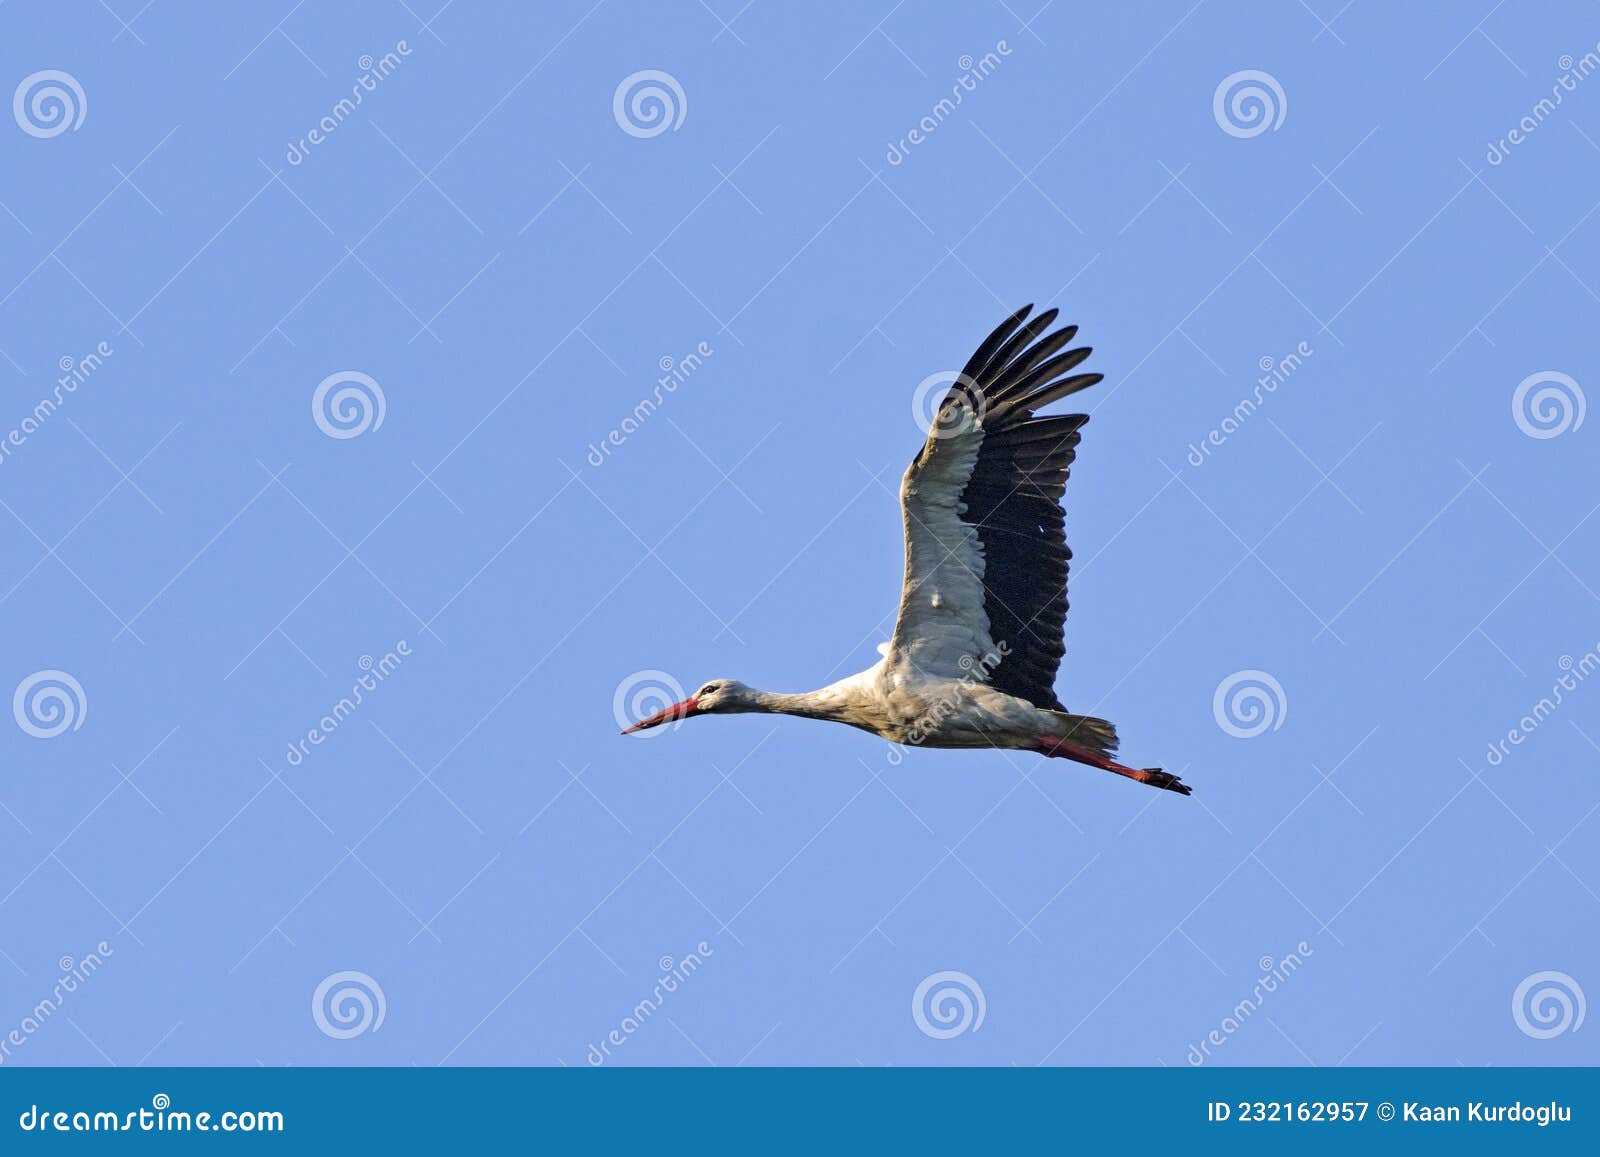 migrating white stork